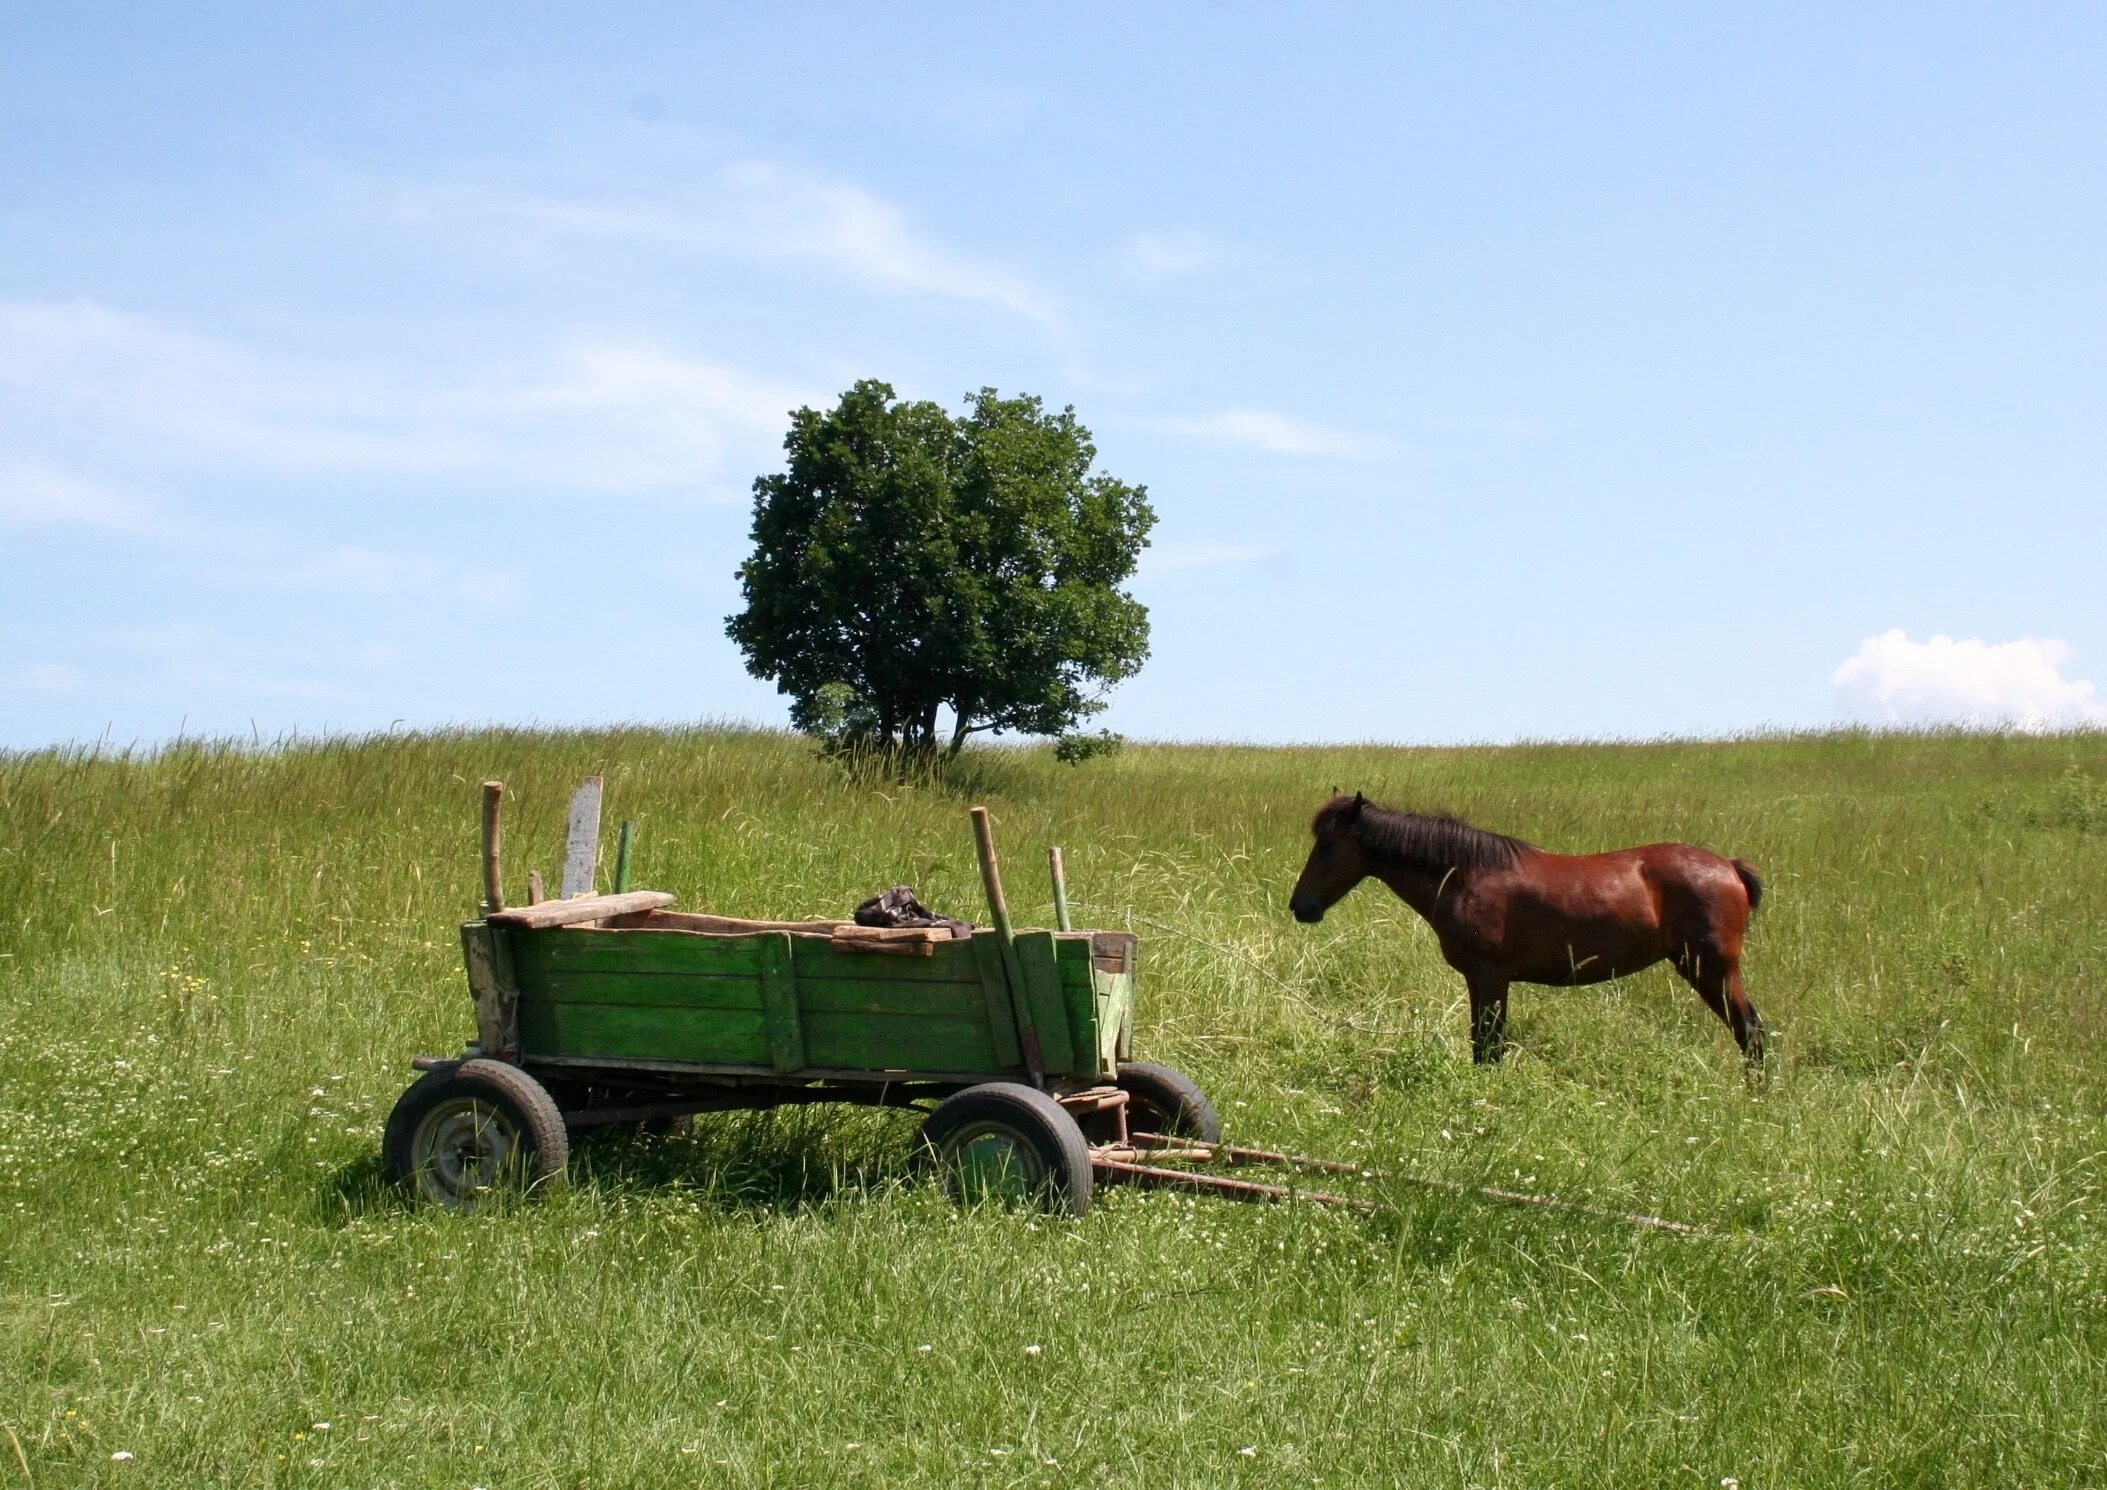 Невдалеке стояла телега. Телега с лошадью. Телега с лошадью в поле. Телега деревенская. Конная телега.